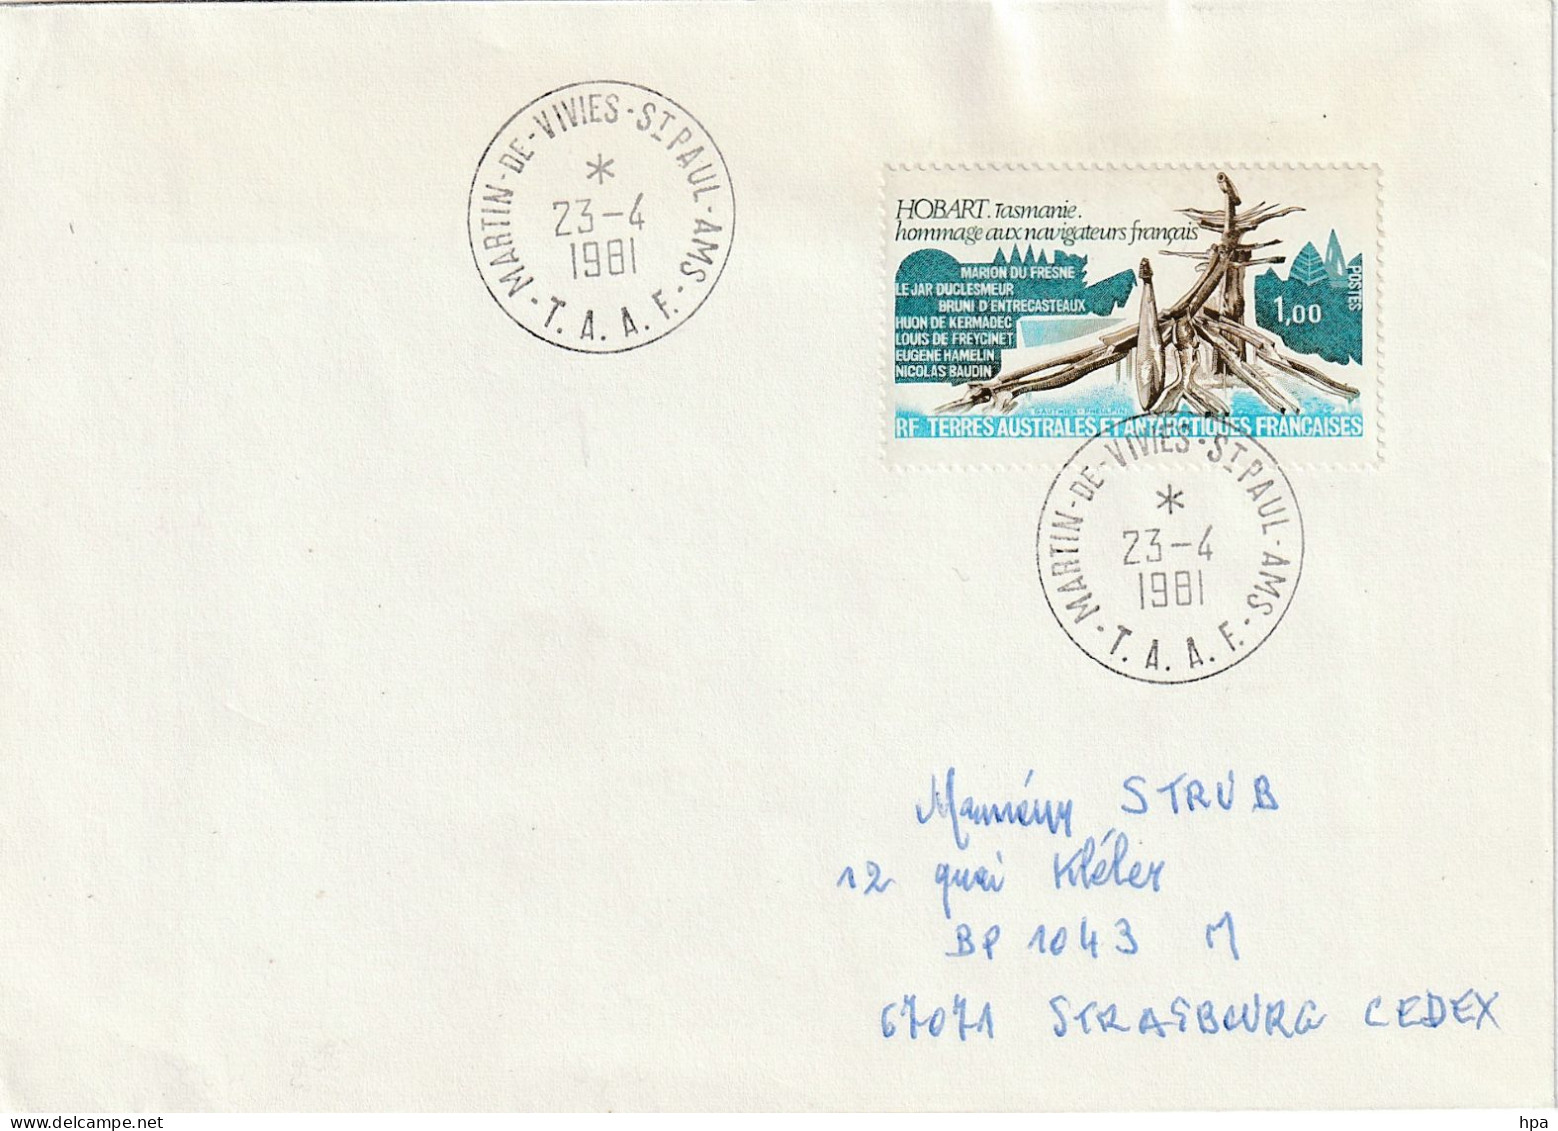 Enveloppe TAAF, Qui A Voyagé De Martin De Vivies - Saint Paul Le 23 - 4 - 1981 - Used Stamps